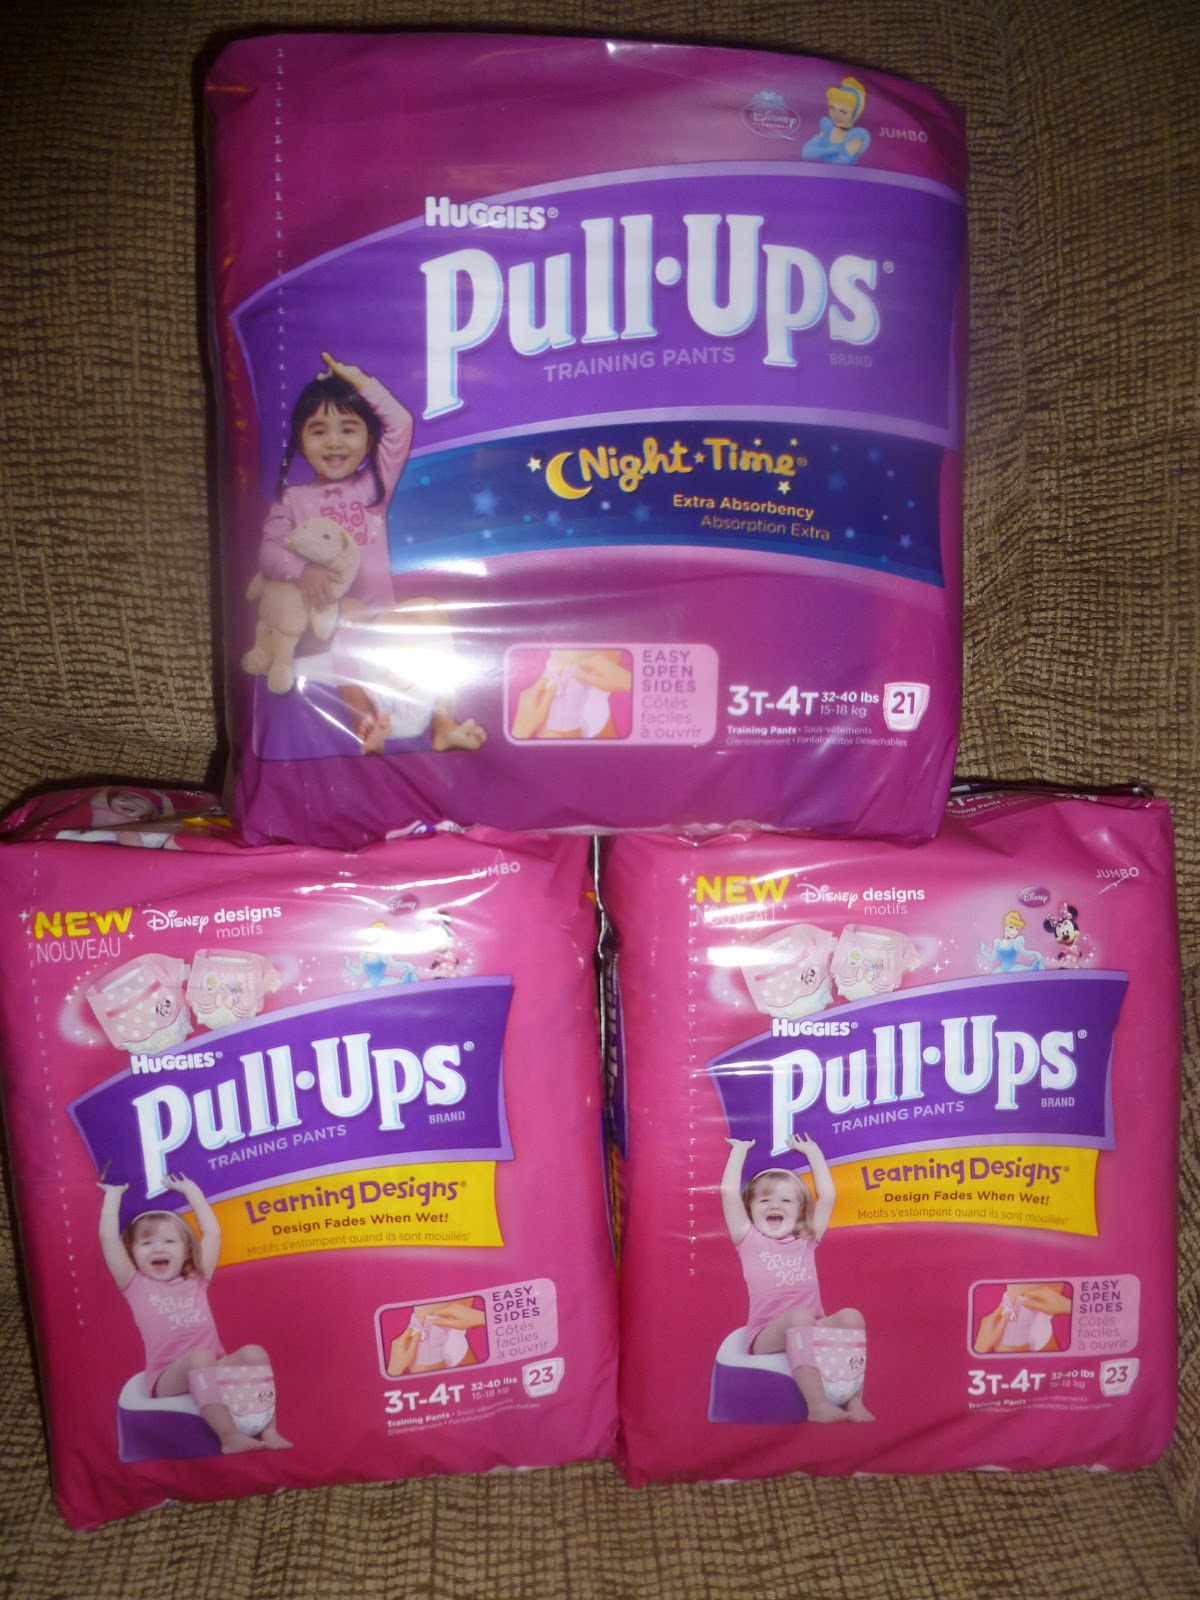 Girls in Diaper-Pull-Ups 11, 013 @iMGSRC.RU